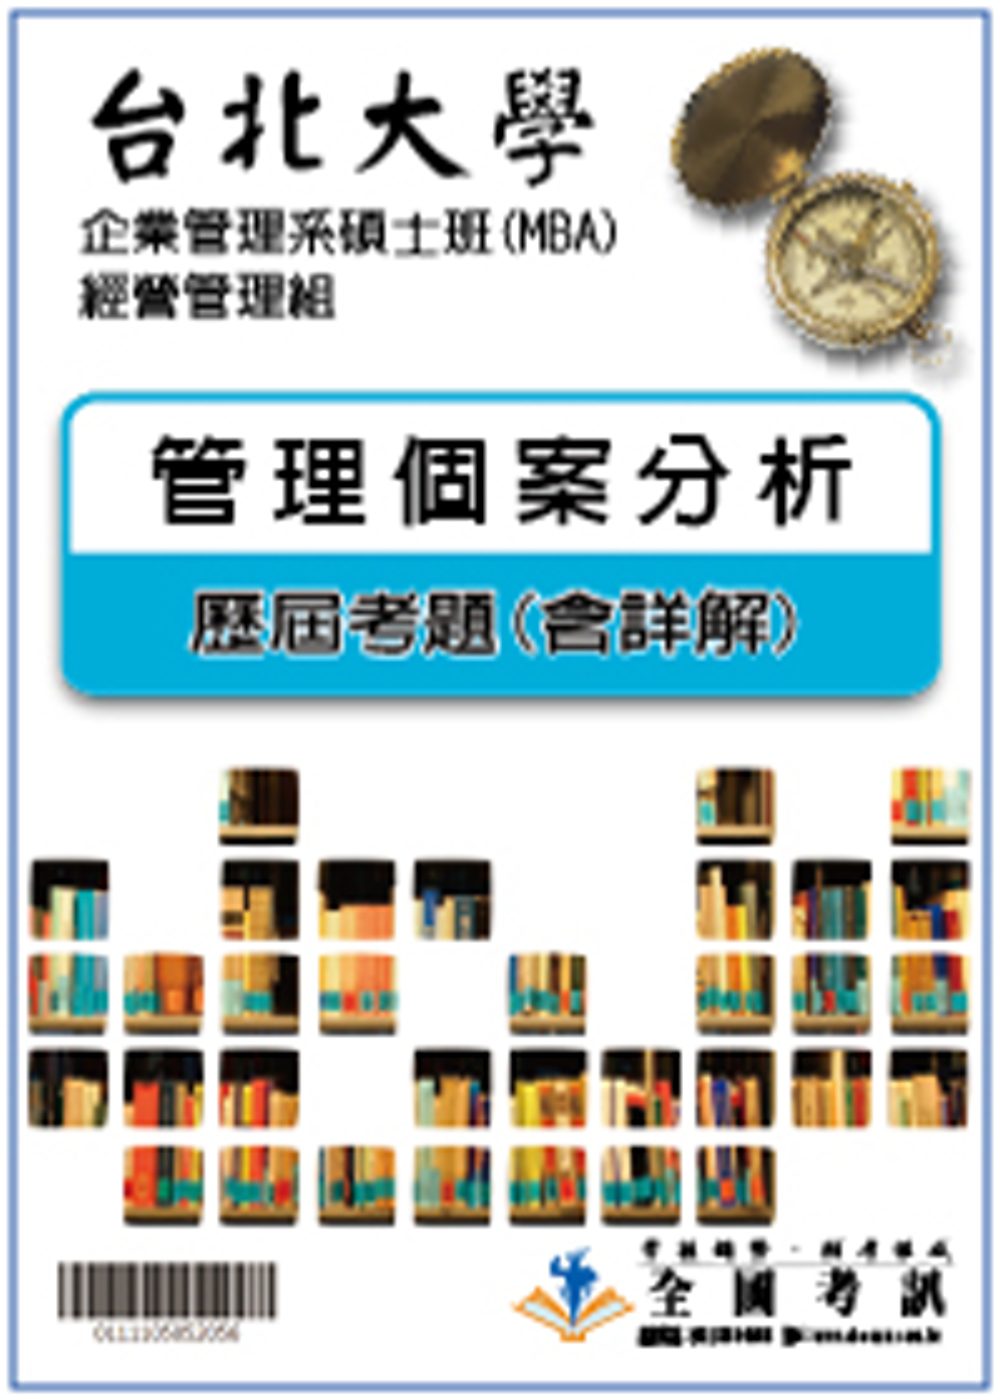 考古題解答-台北大學-企業管理系碩士班(MBA)-經營管理組